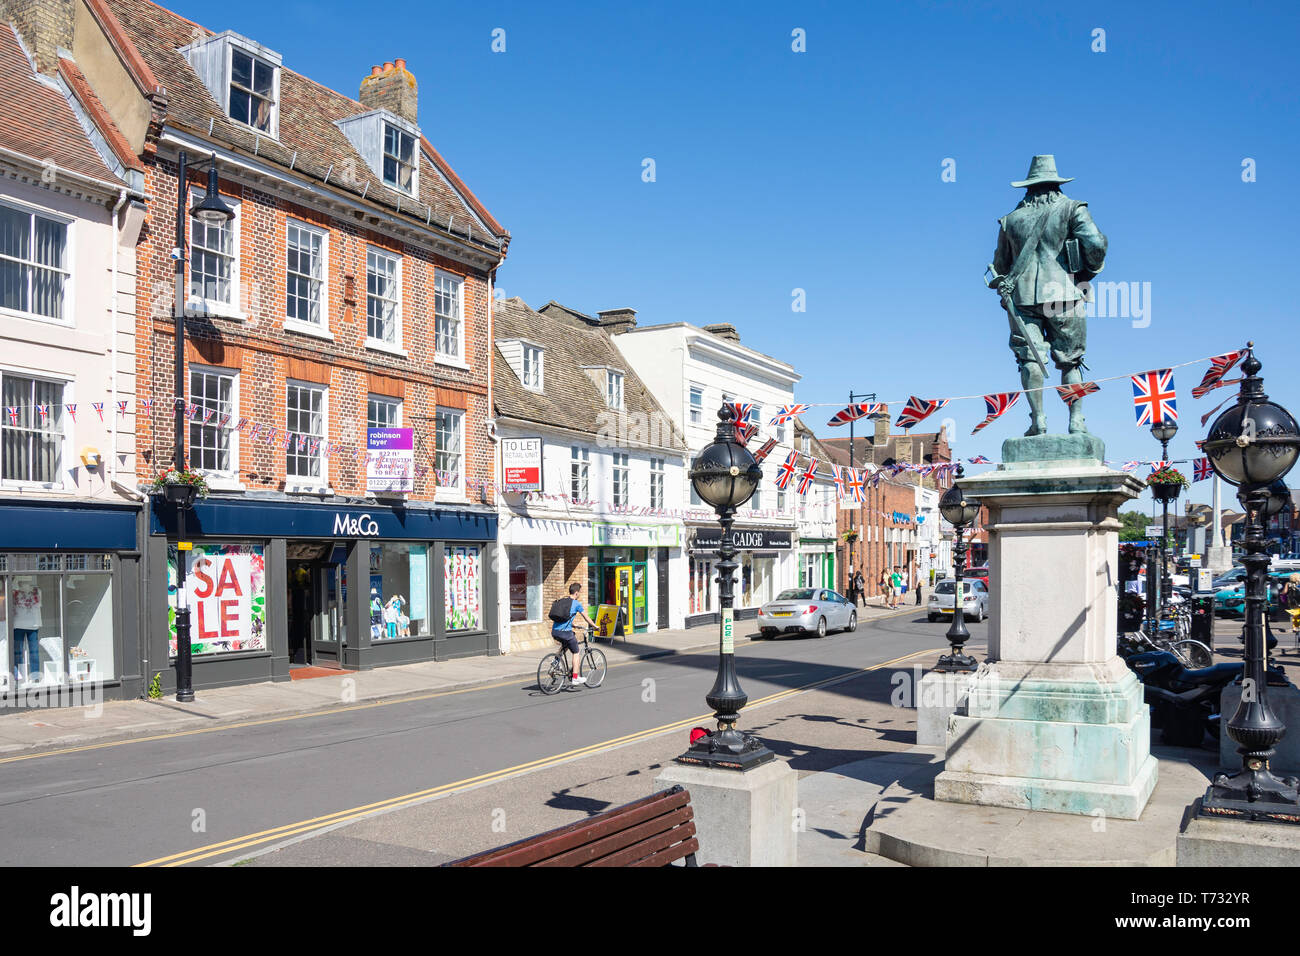 La Statue d'Oliver Cromwell, le trottoir, St Ives, Cambridgeshire, Angleterre, Royaume-Uni Banque D'Images